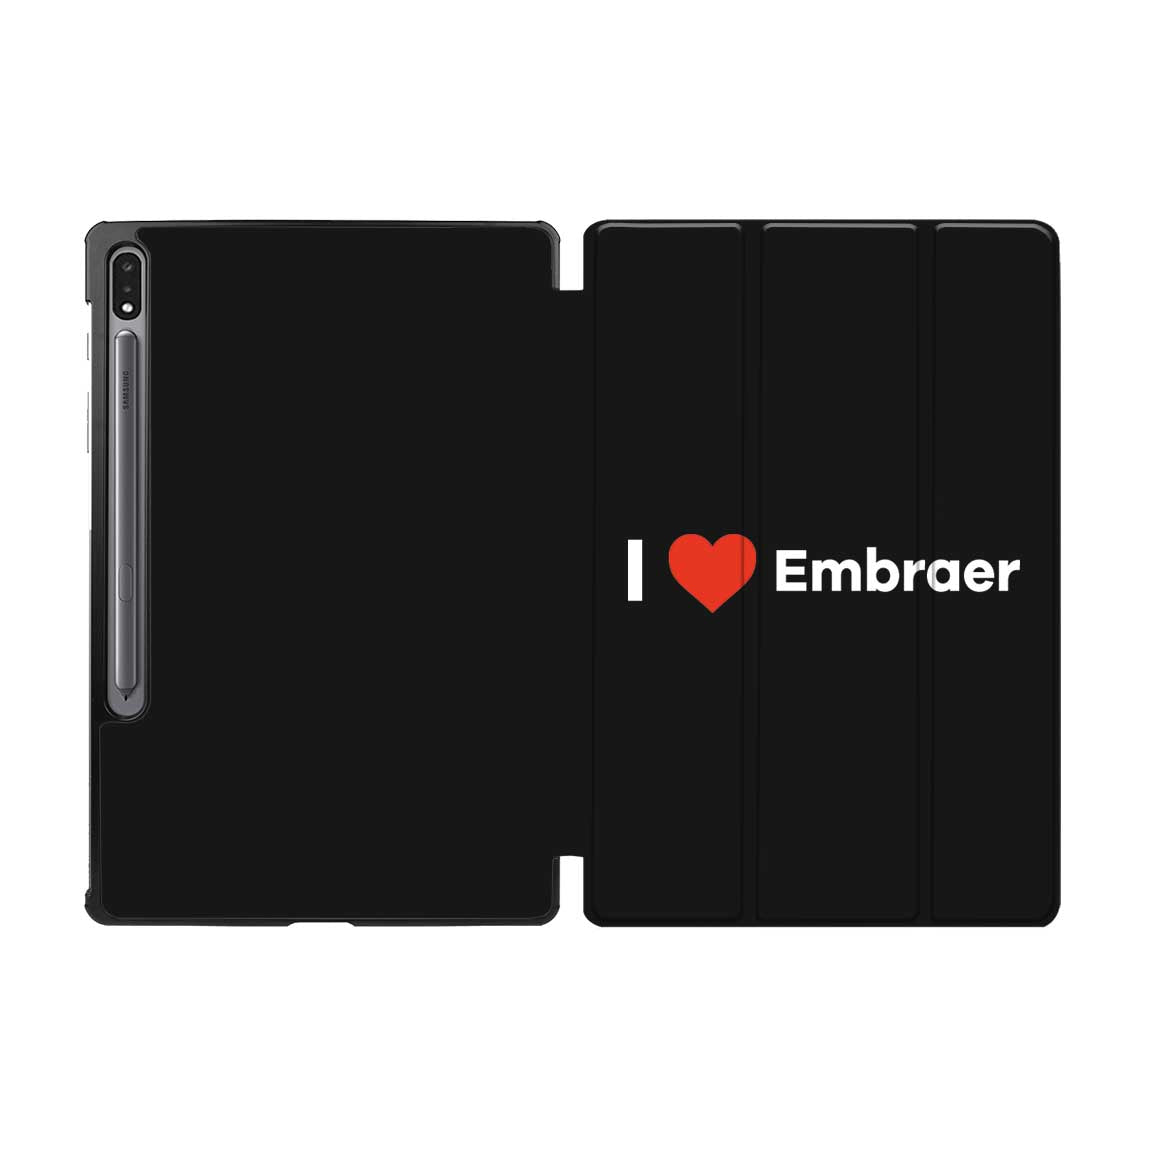 I Love Embraer Designed Samsung Tablet Cases